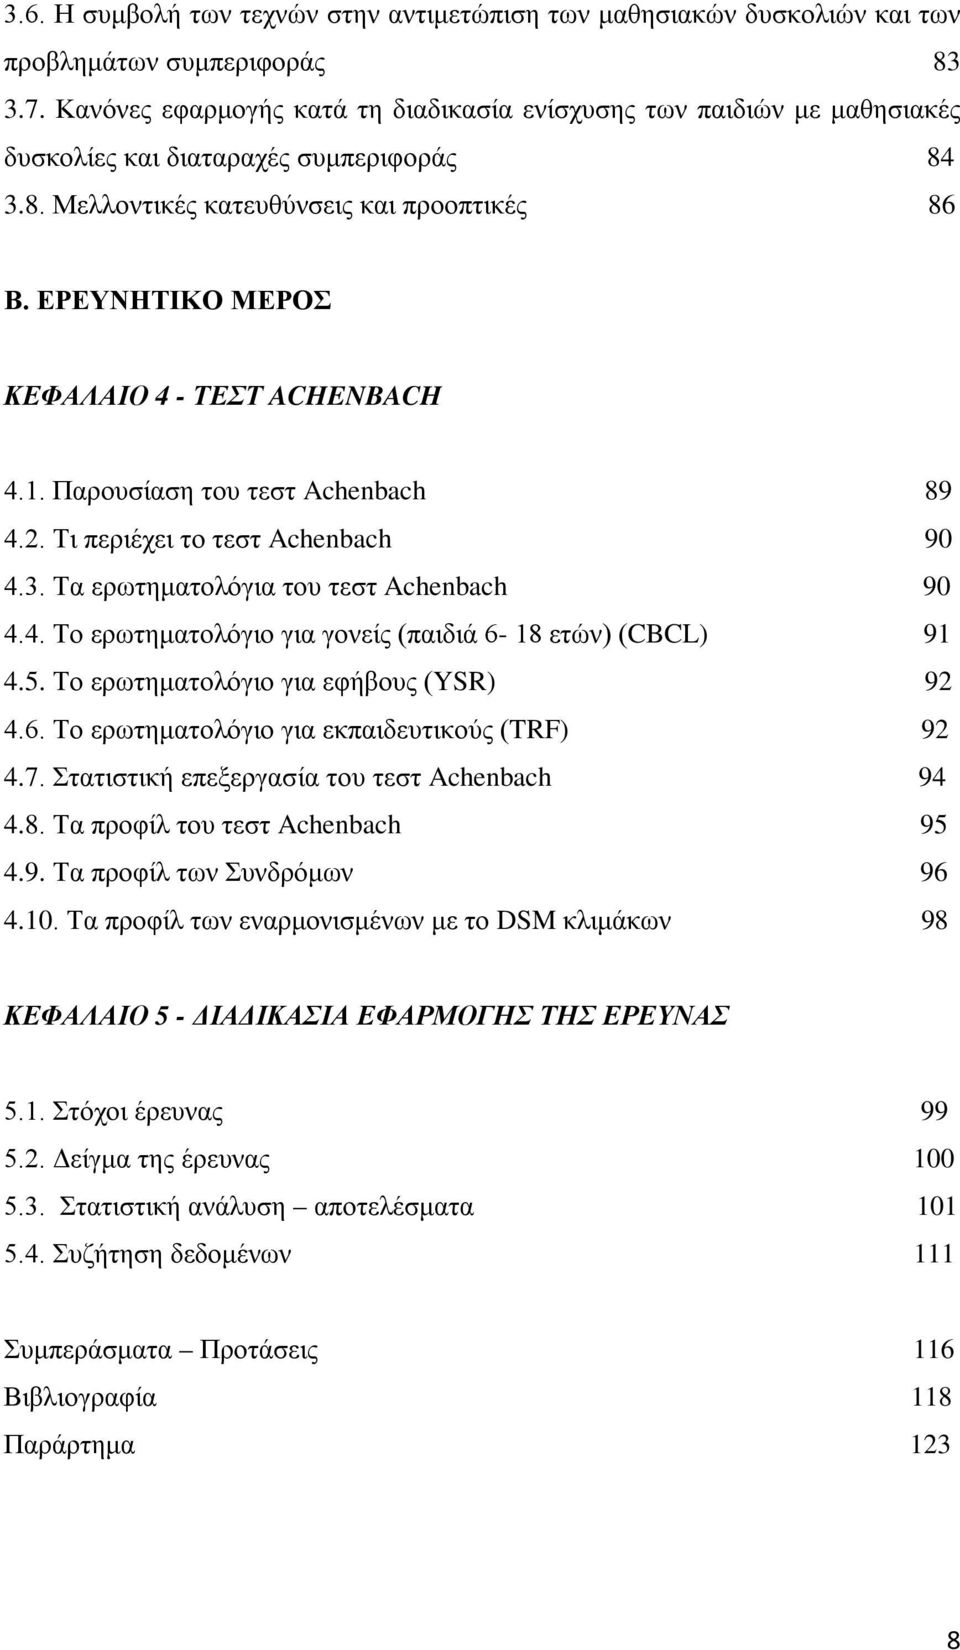 ΕΡΕΥΝΗΤΙΚΟ ΜΕΡΟΣ ΚΕΦΑΛΑΙΟ 4 - ΤΕΣΤ ACHENBACH 4.1. Παρουσίαση του τεστ Achenbach 89 4.2. Τι περιέχει το τεστ Achenbach 90 4.3. Τα ερωτηματολόγια του τεστ Achenbach 90 4.4. Το ερωτηματολόγιο για γονείς (παιδιά 6-18 ετών) (CBCL) 91 4.